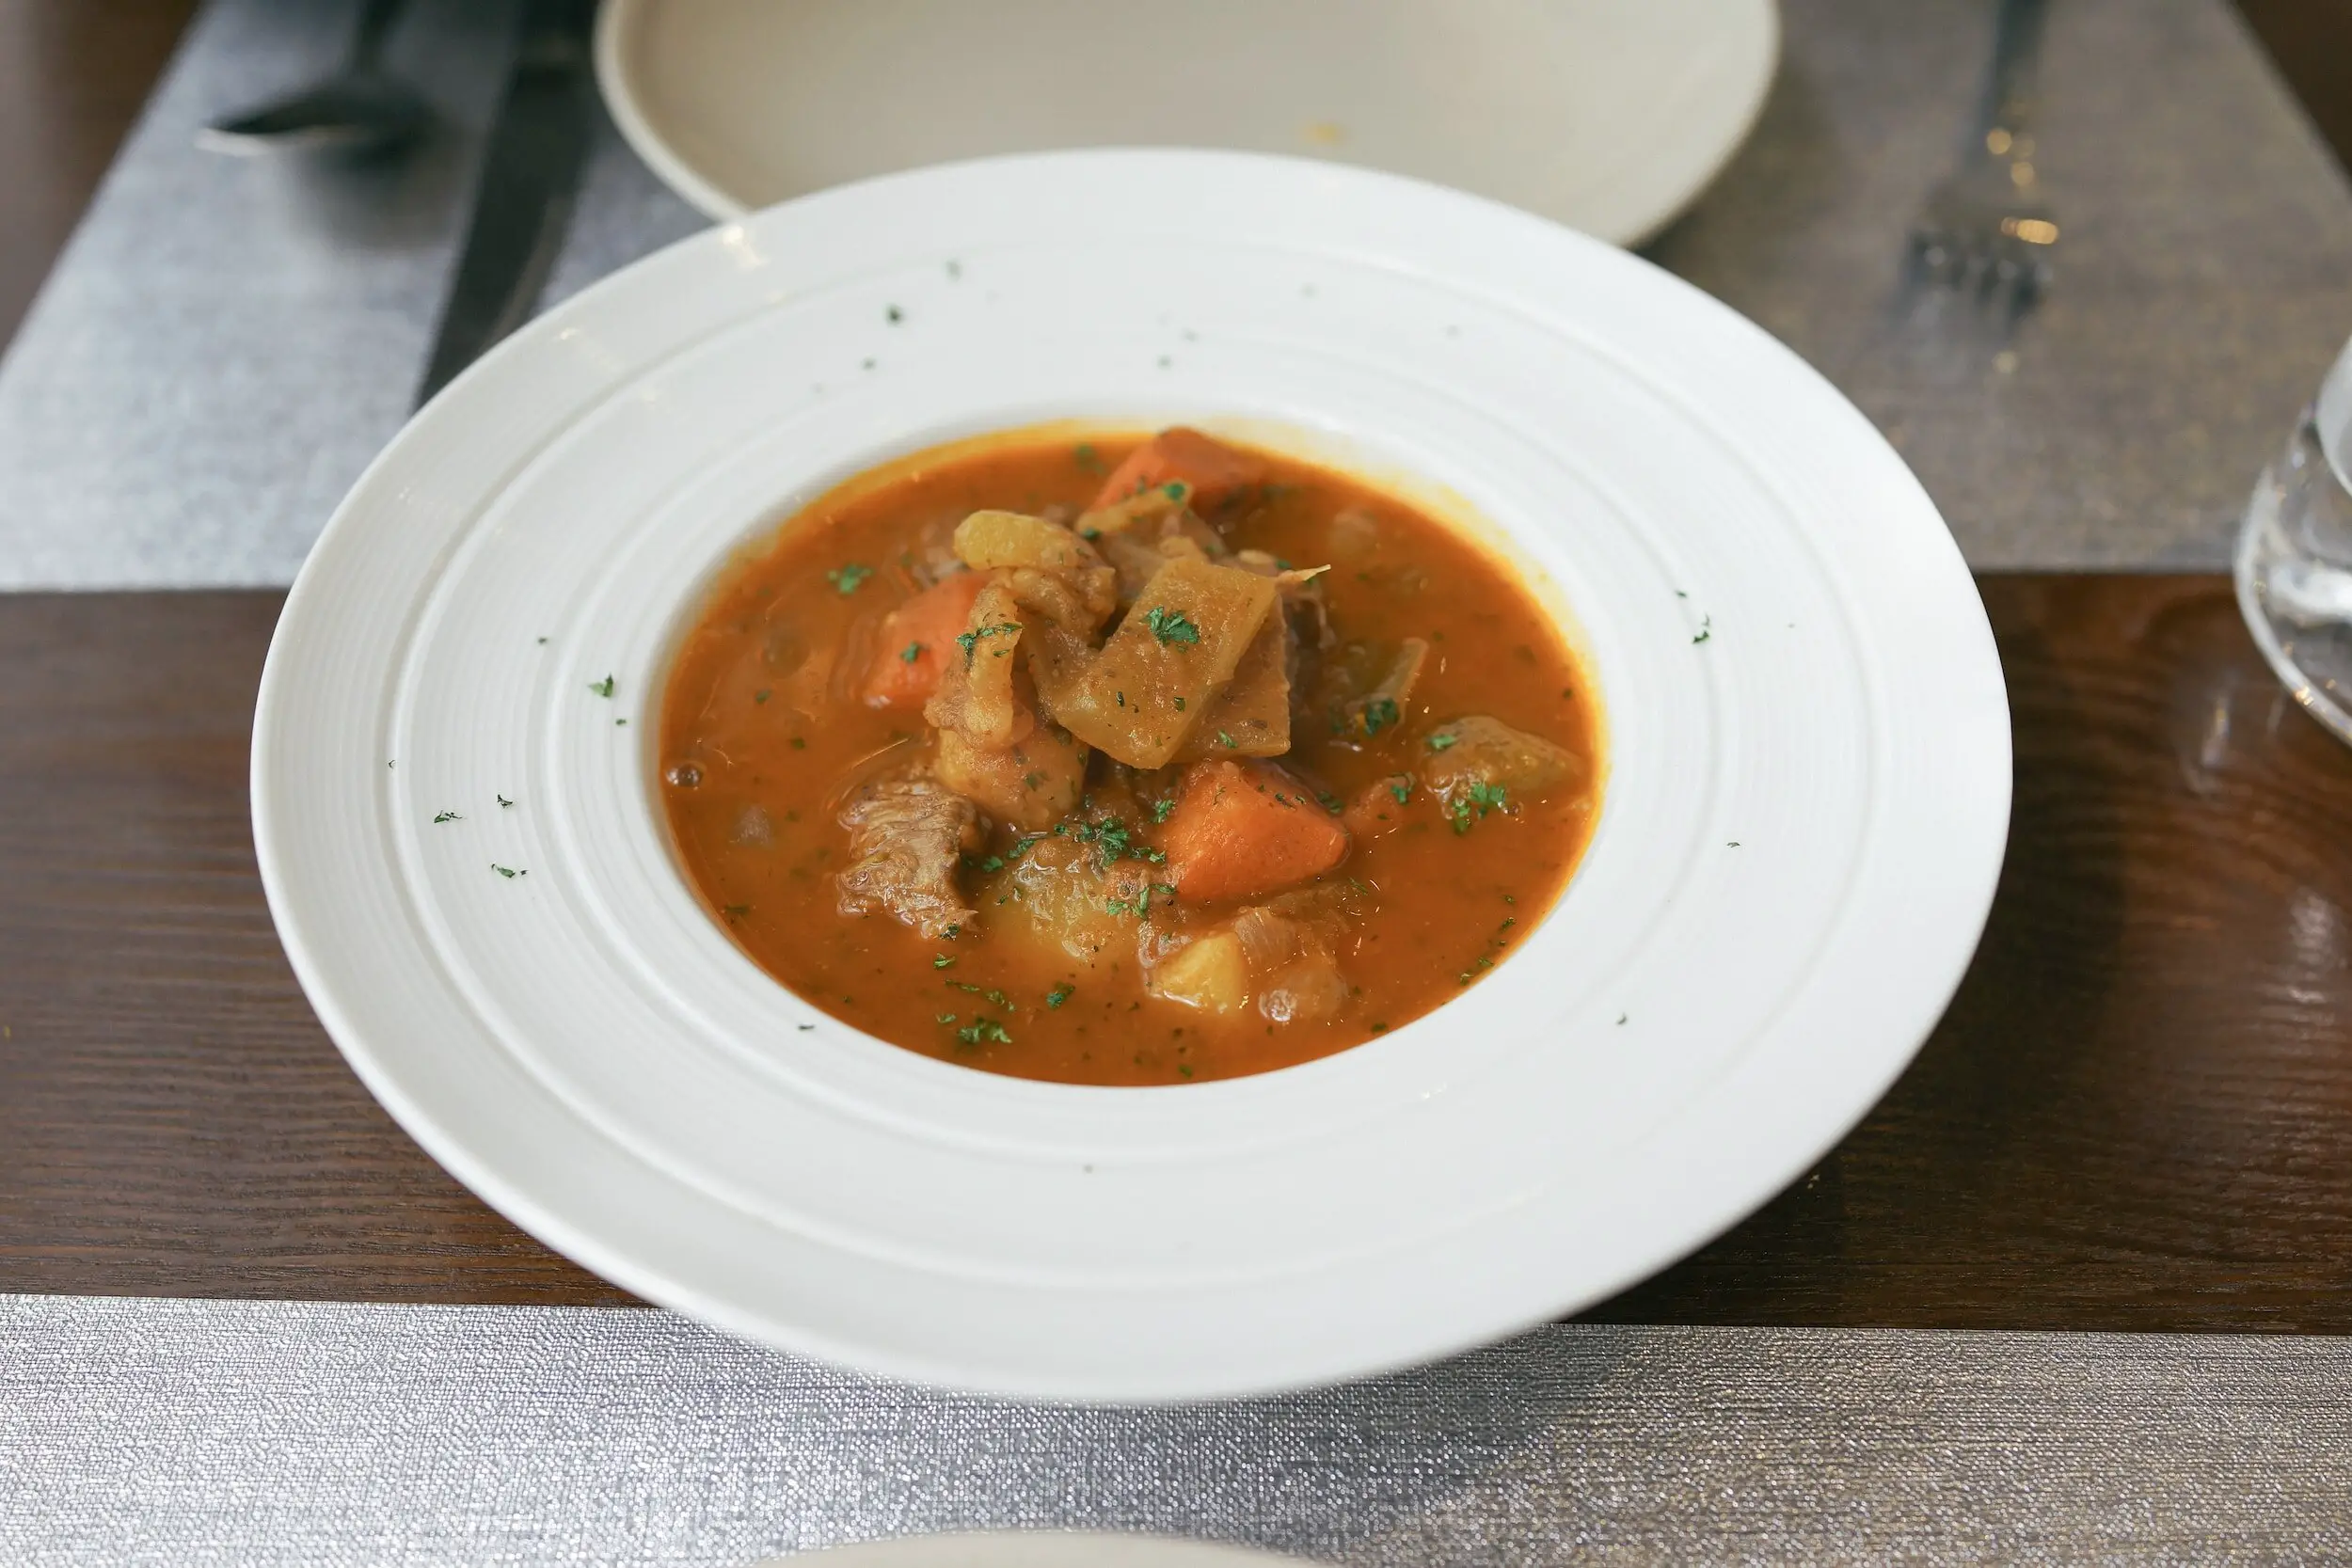 pinotage food pairing - stew